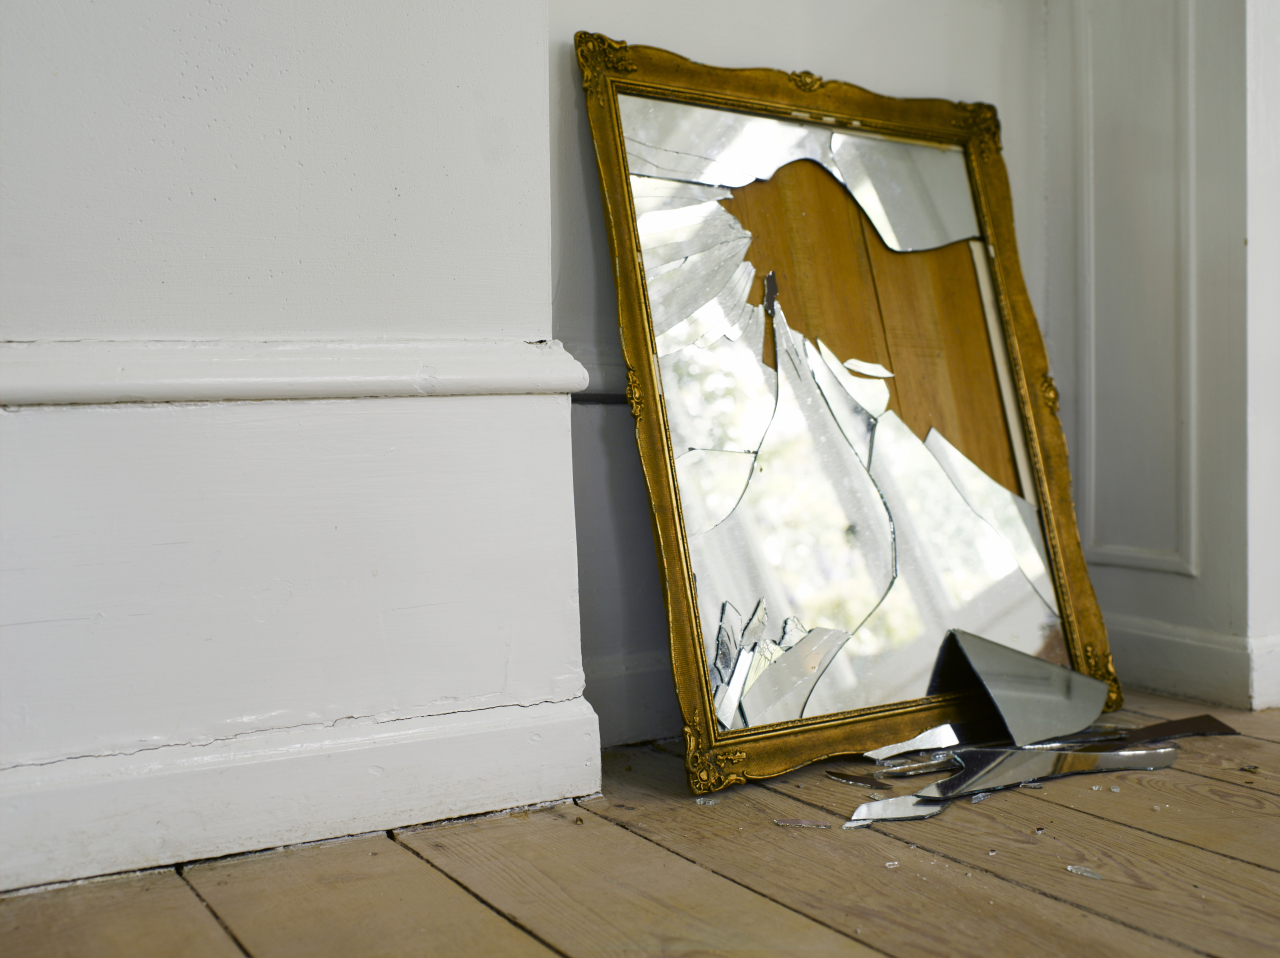 Упала фотография со стены и разбилось стекло к чему это